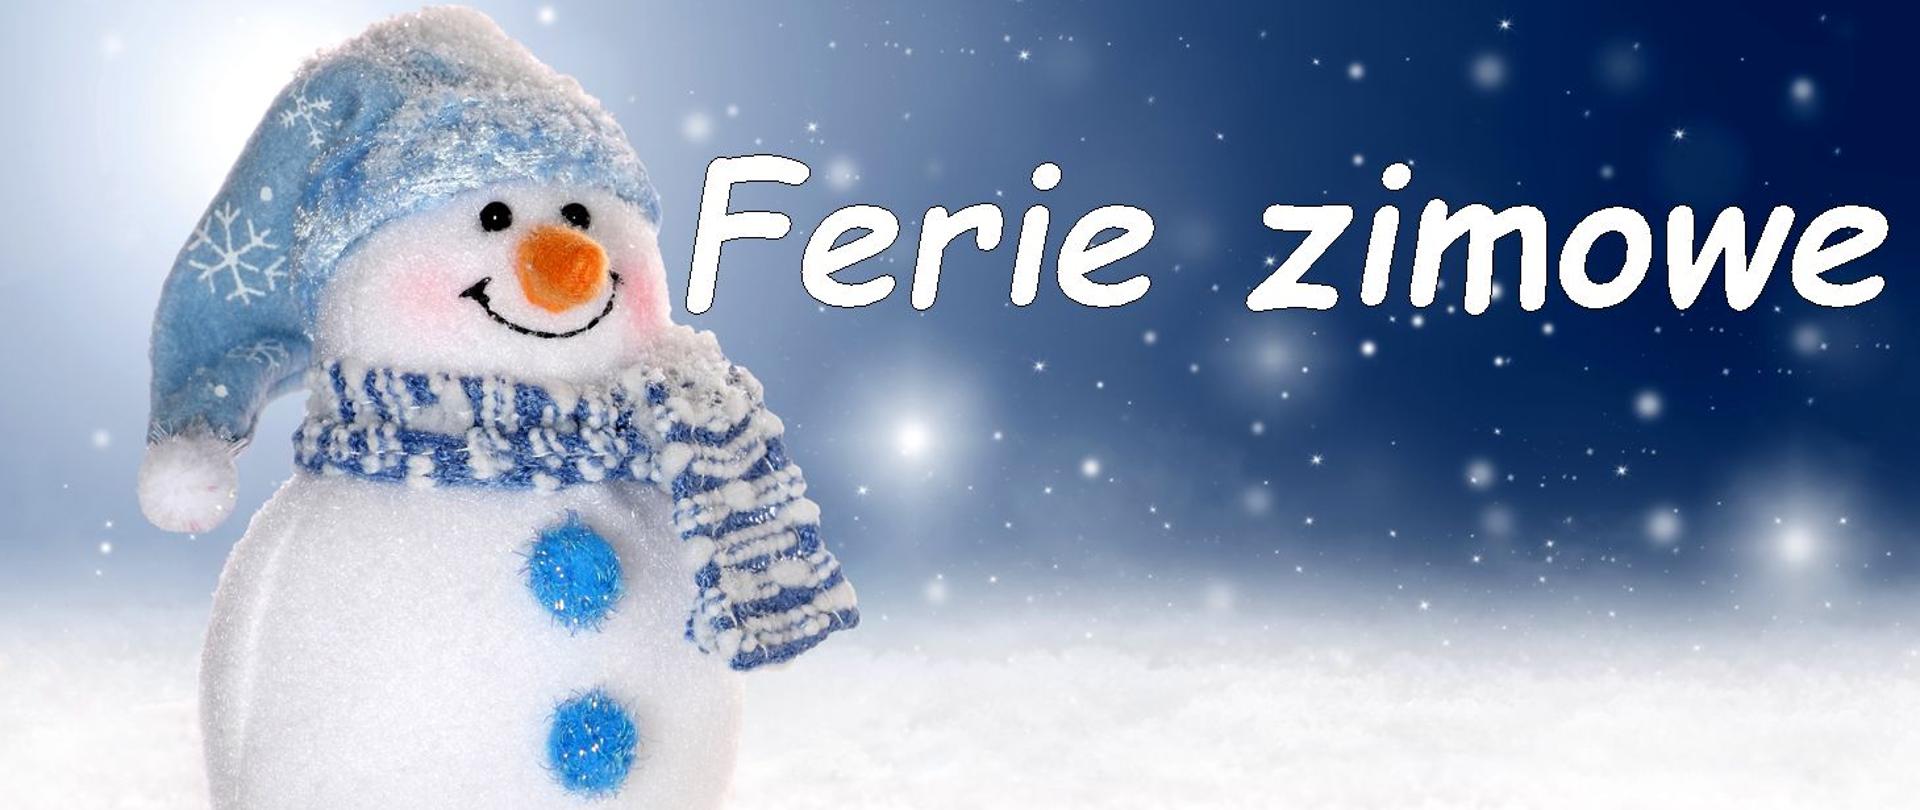 Zdjęcie przestawia zimowego bałwana z czerwonym nosem i niebieskiej czapce z białym pomponem na tle padającego śniegu. Po środku zdjęcia umieszczone są napisy w kolorze białym : Ferie zimowe.